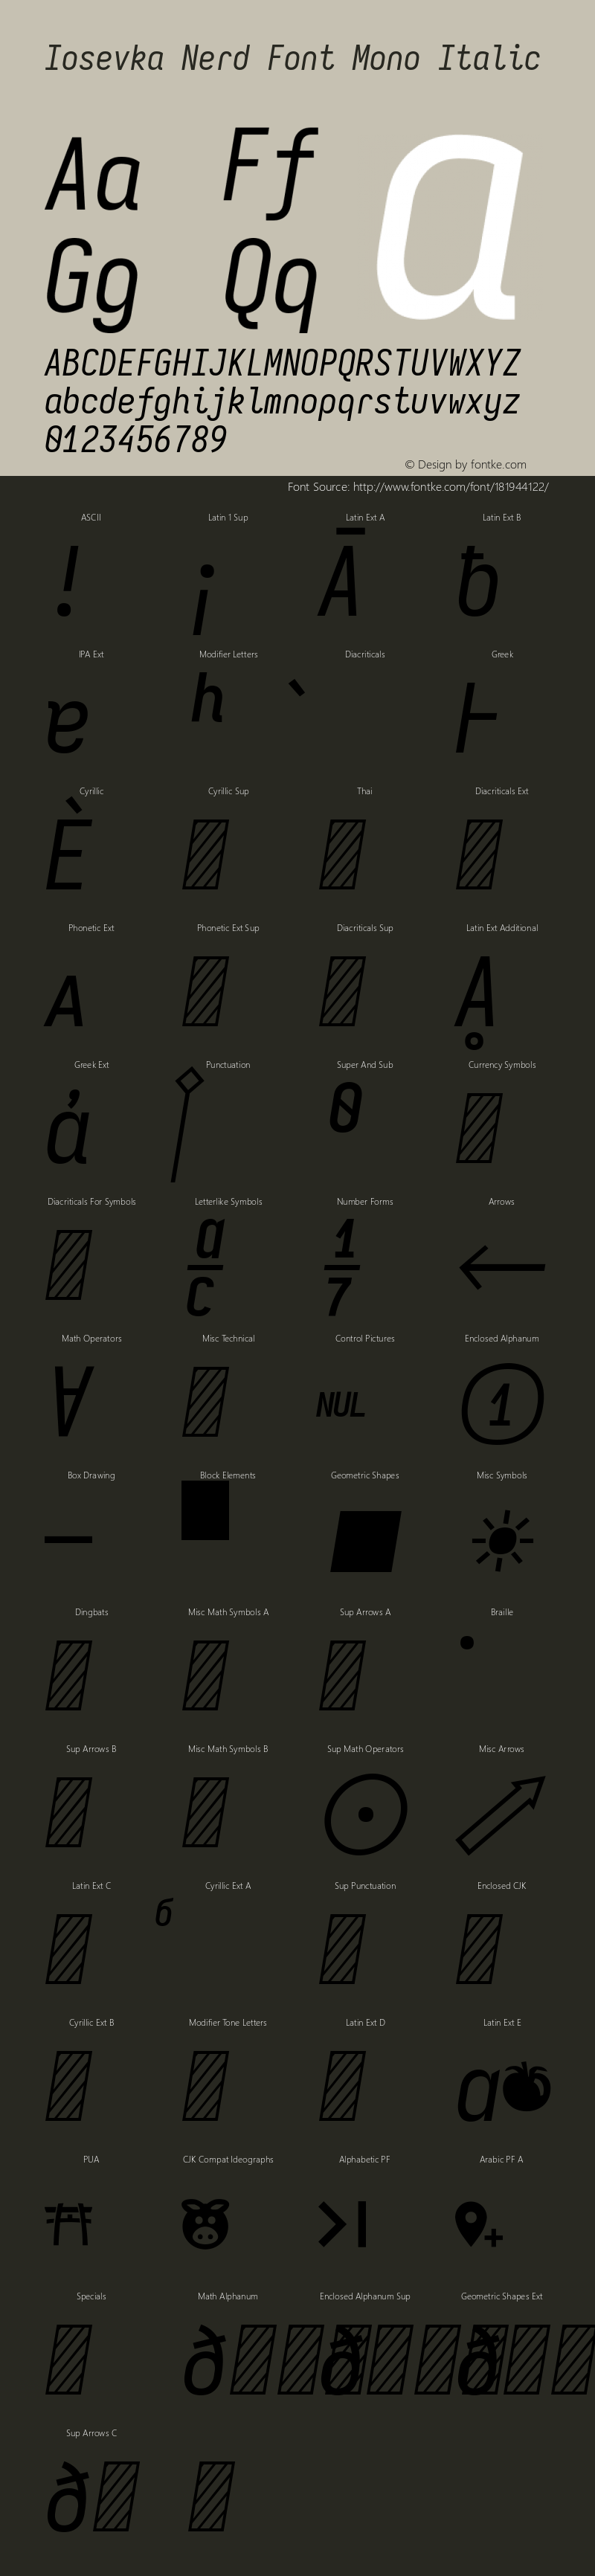 Iosevka Mayukai Monolite Italic Nerd Font Complete Mono Version 10.3.4; ttfautohint (v1.8.4)图片样张